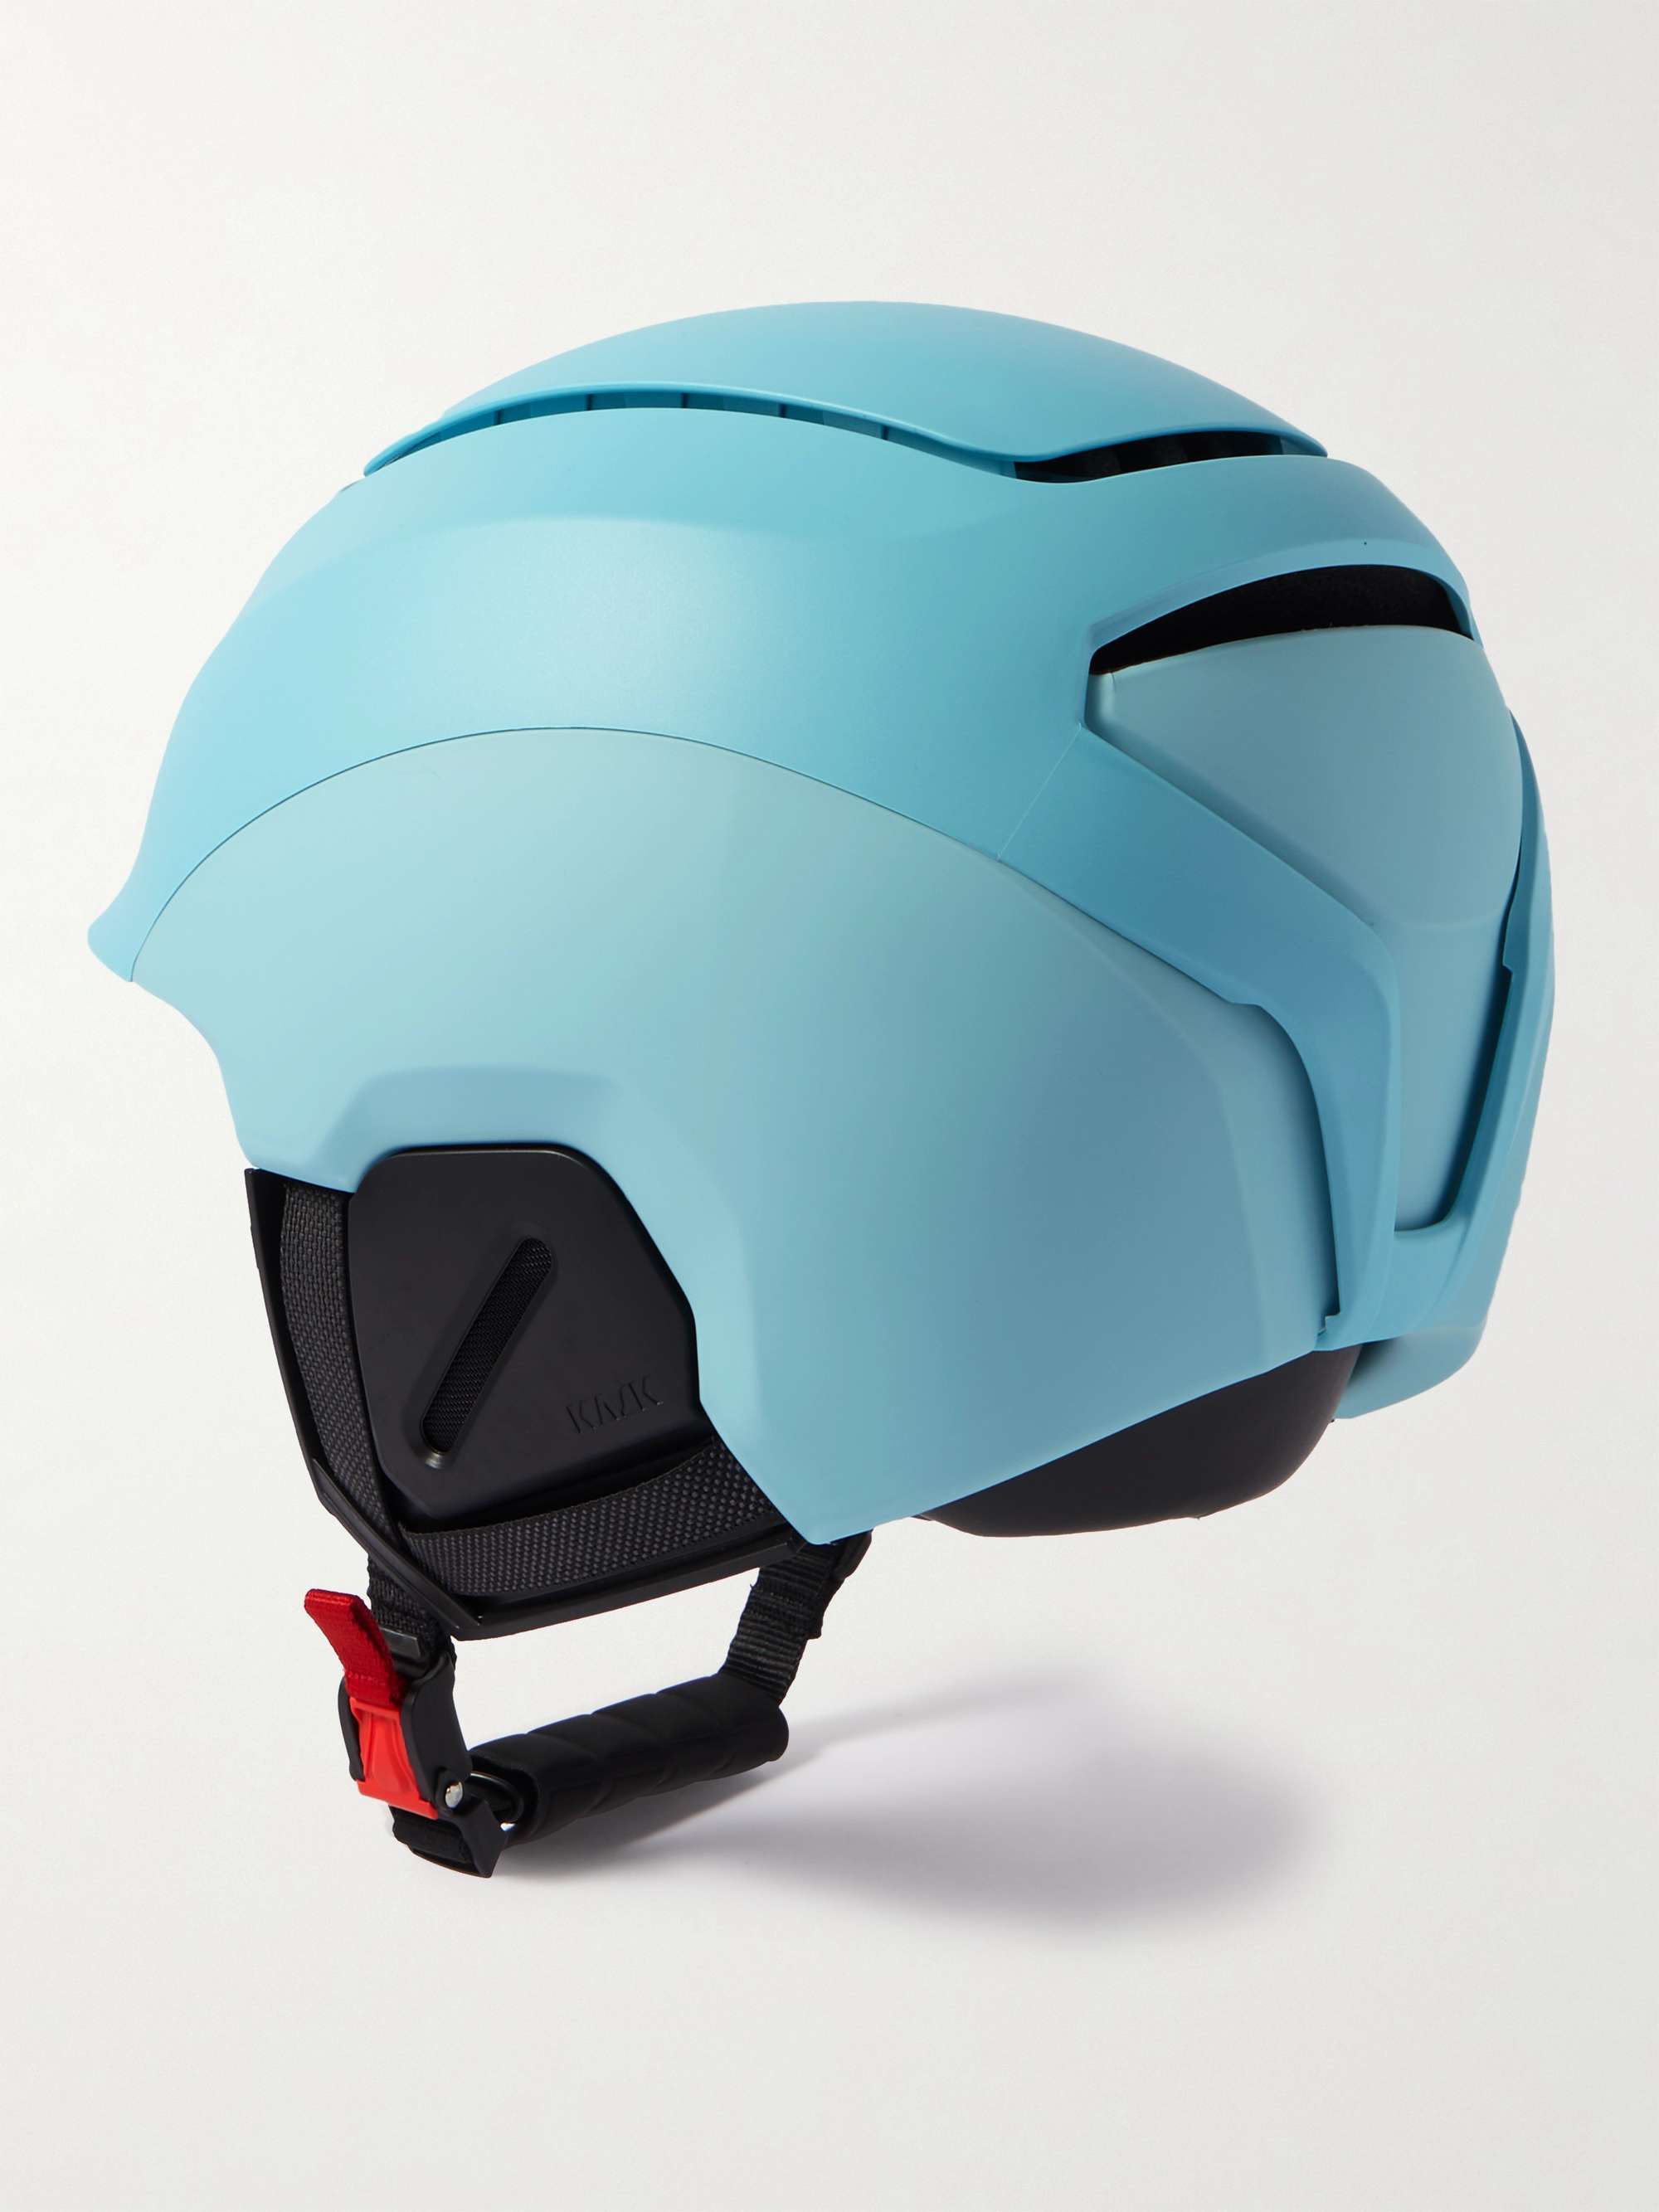 KASK Khimera Ski Helmet